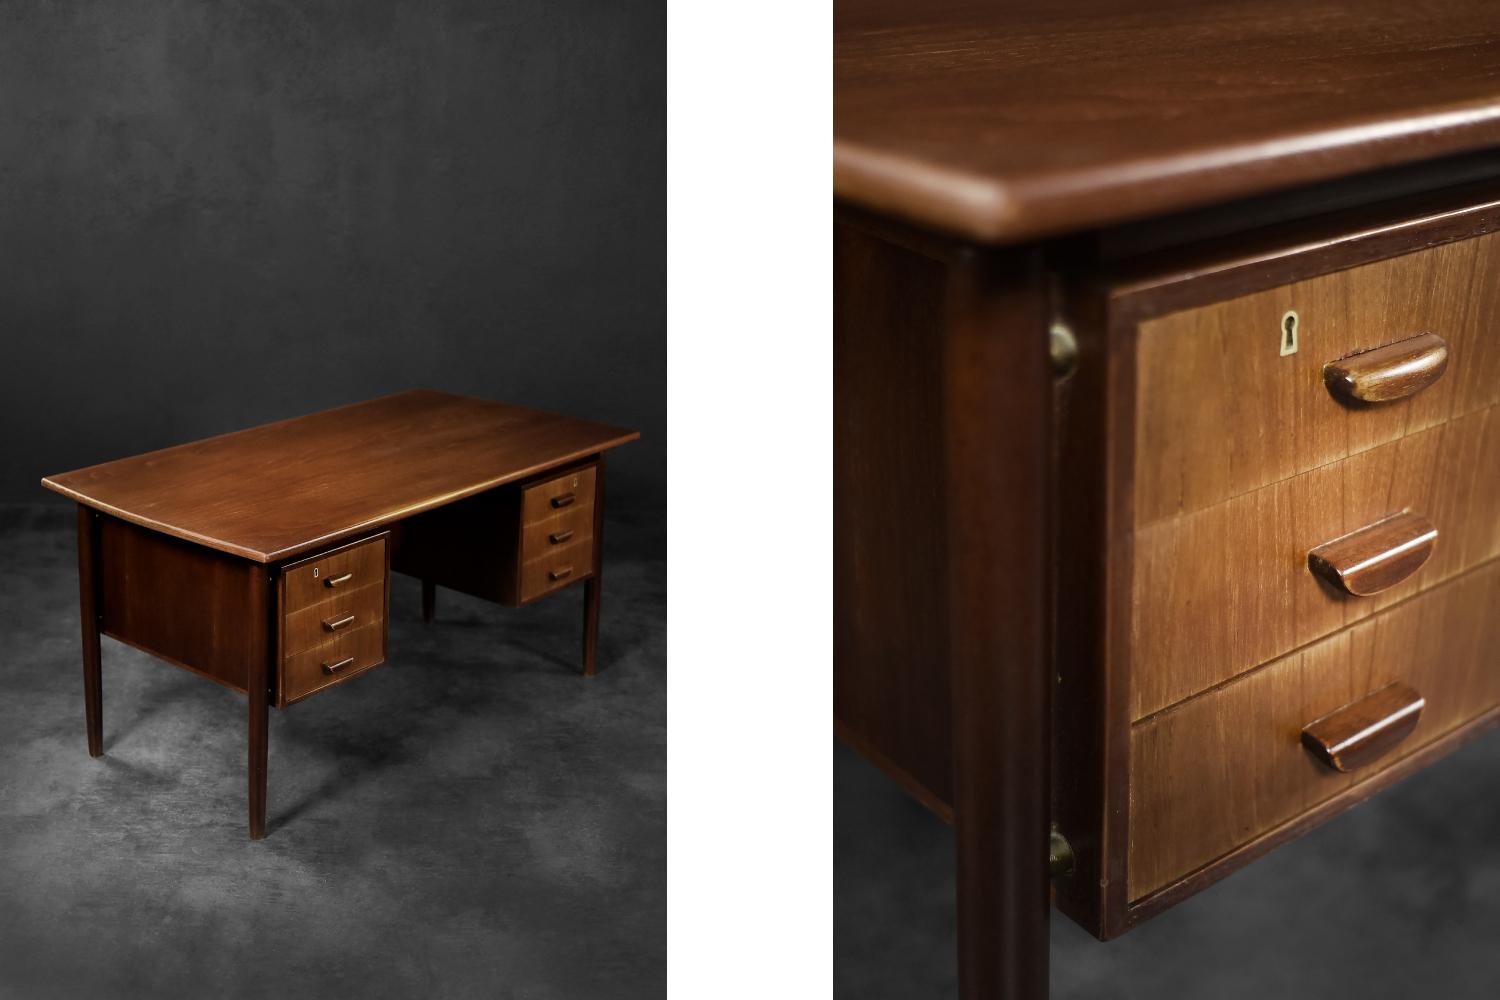 Dieser große, zweiseitige Schreibtisch wurde in den 1960er Jahren in Dänemark hergestellt. Er ist mit Teakholz in einem warmen Braunton gefertigt. Es ist ein Möbelstück mit einem ausgewogenen Design, bei dem Stil und Funktionalität Hand in Hand